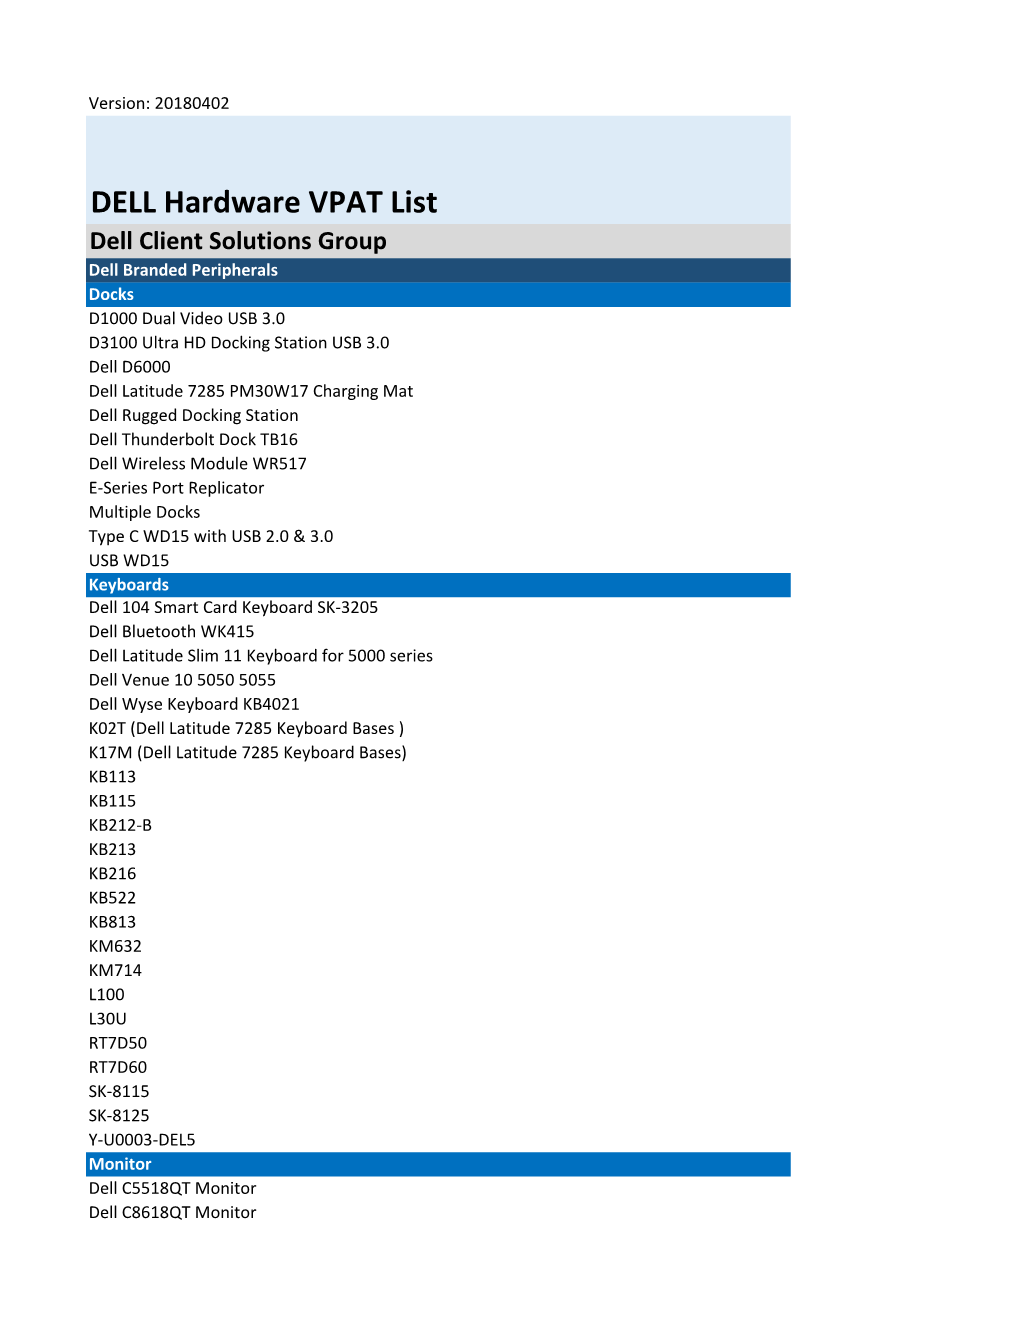 DELL Hardware VPAT List